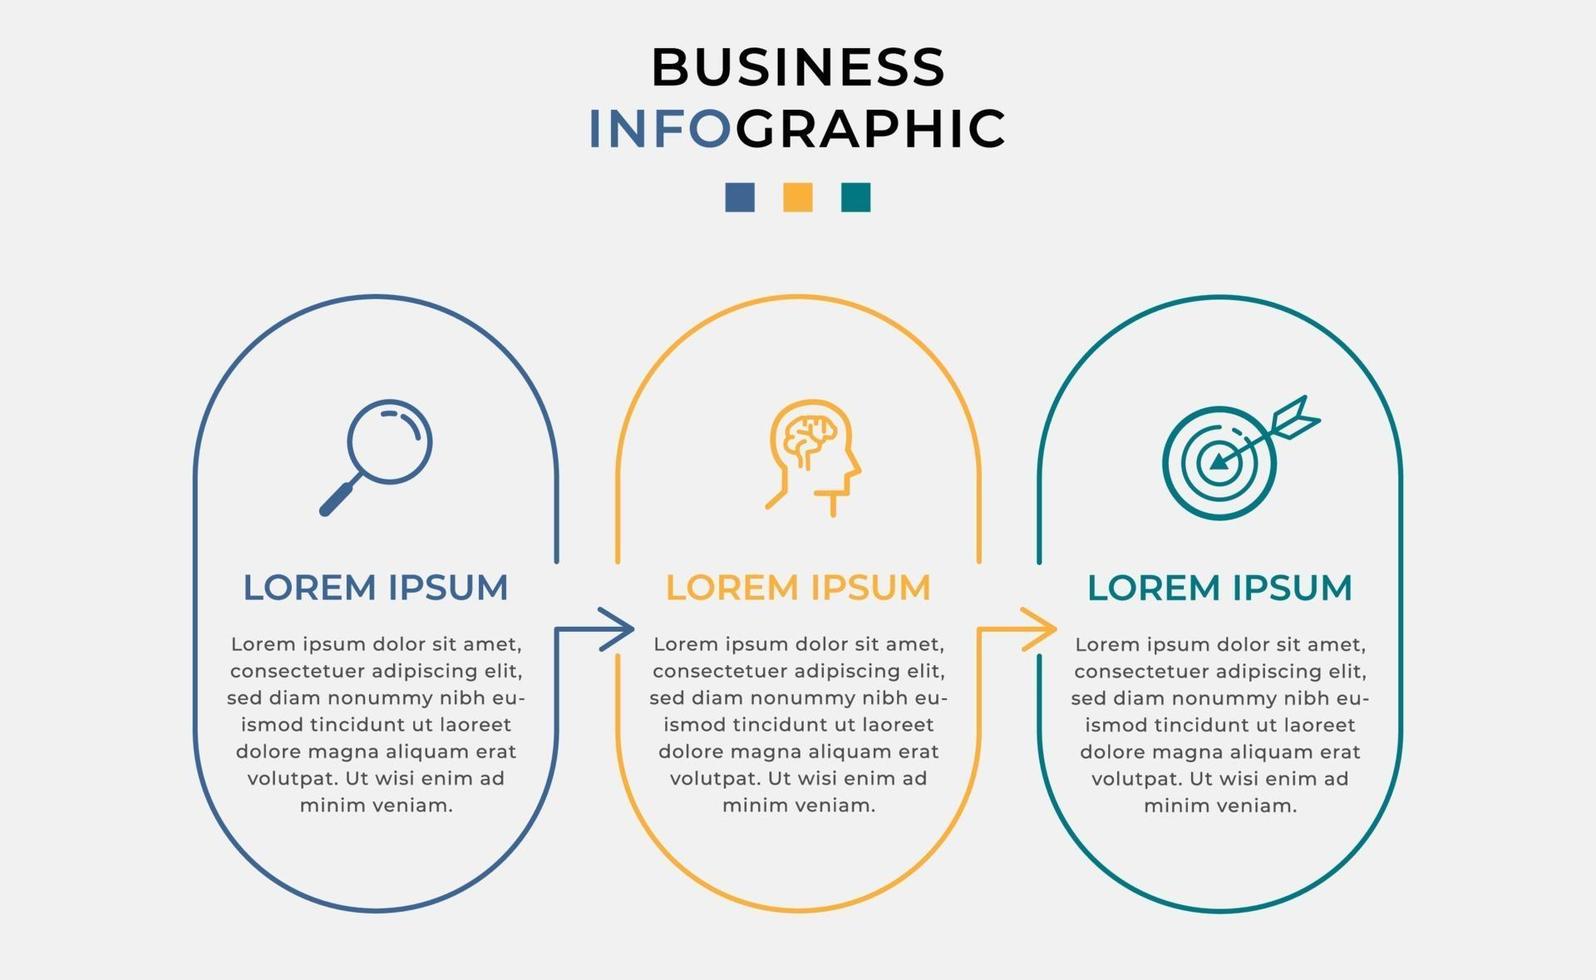 modelo mínimo de infográficos de negócios. linha do tempo com 3 etapas, opções e ícones de marketing vetor